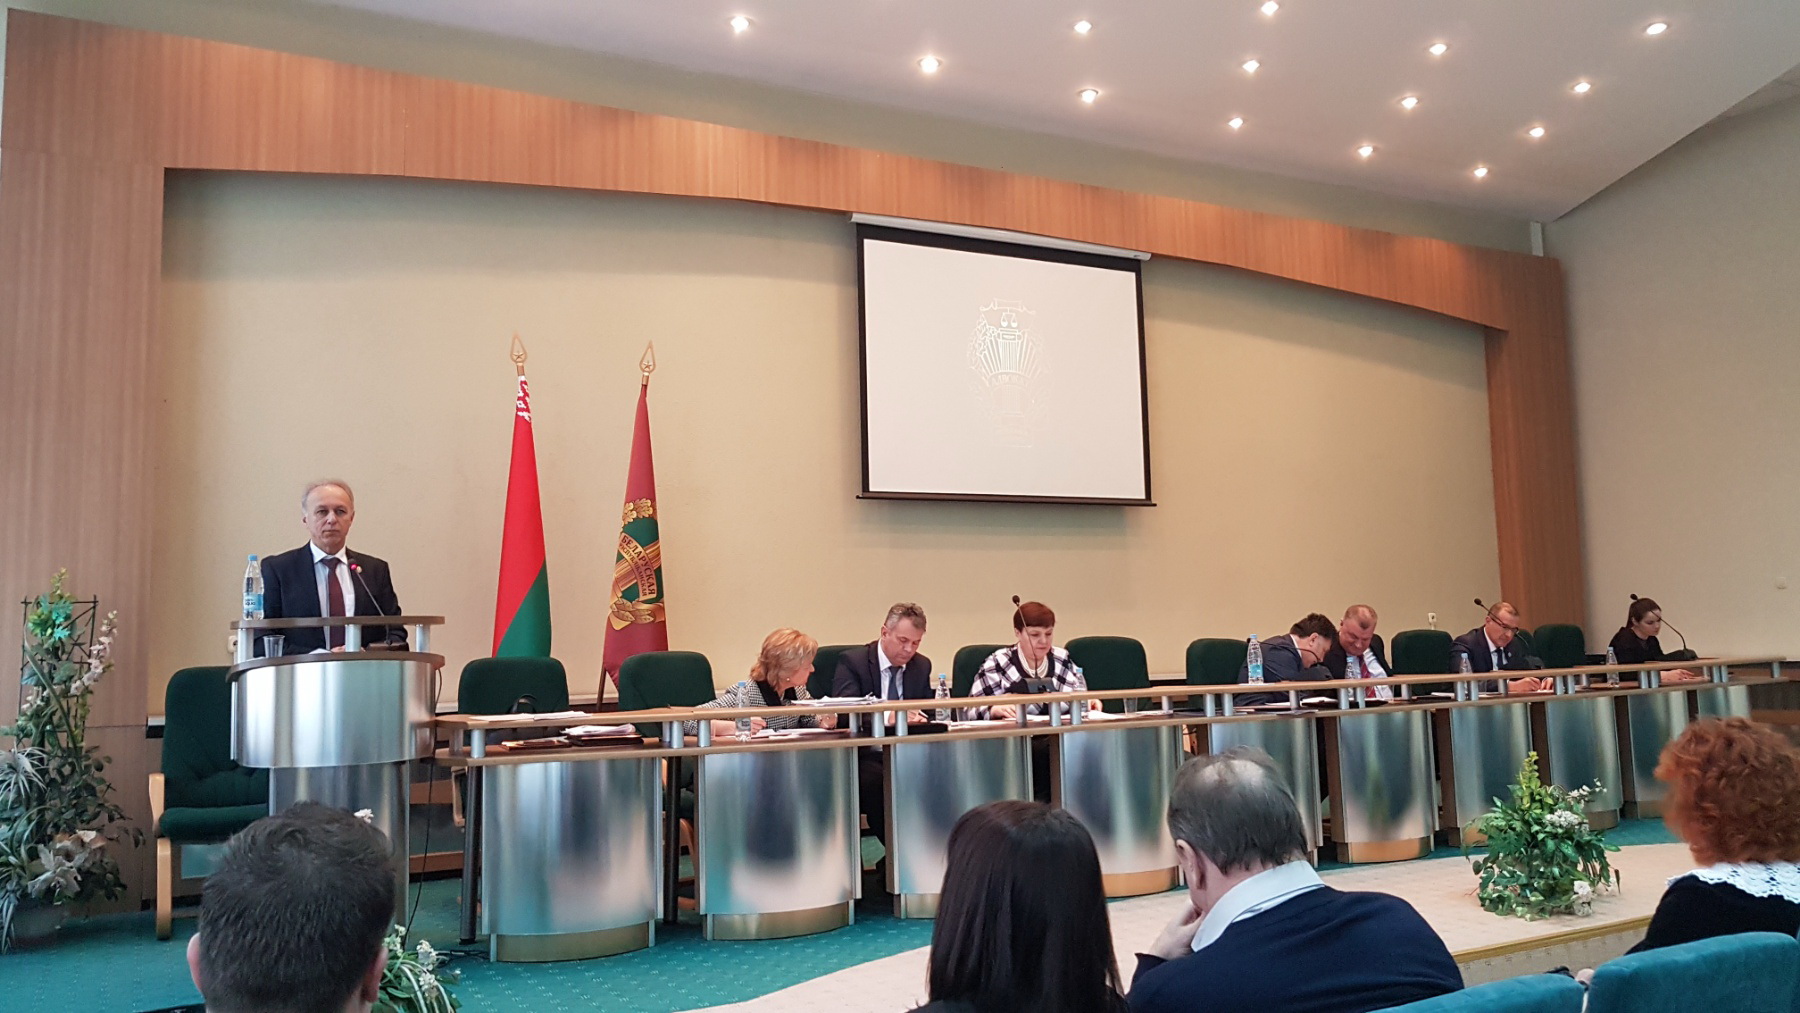 Отчетно-выборное собрание Могилевской областной коллегии адвокатов состоялось 18 января